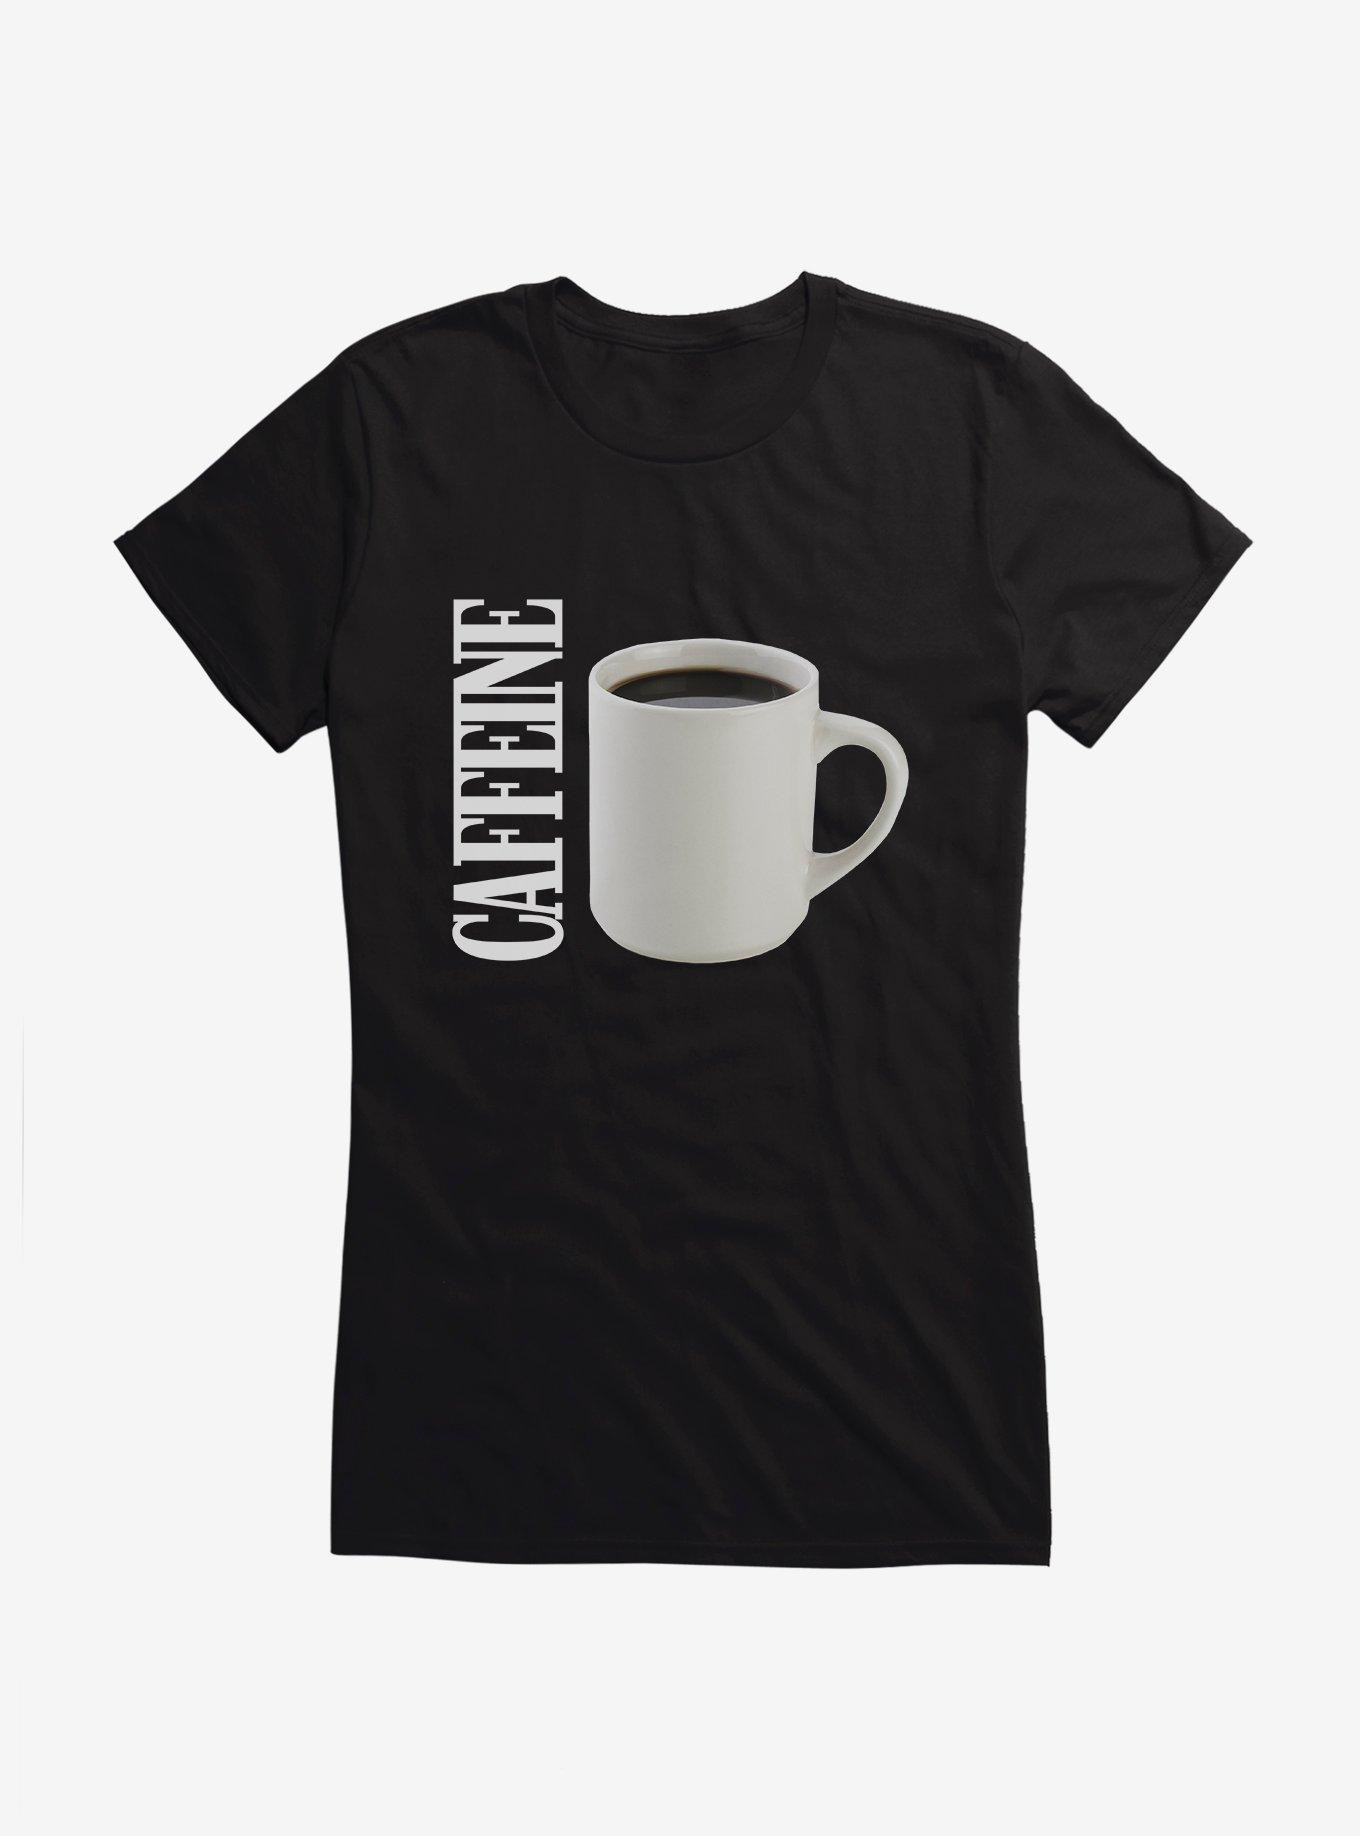 Hot Topic Caffeine Mug Girls T-Shirt